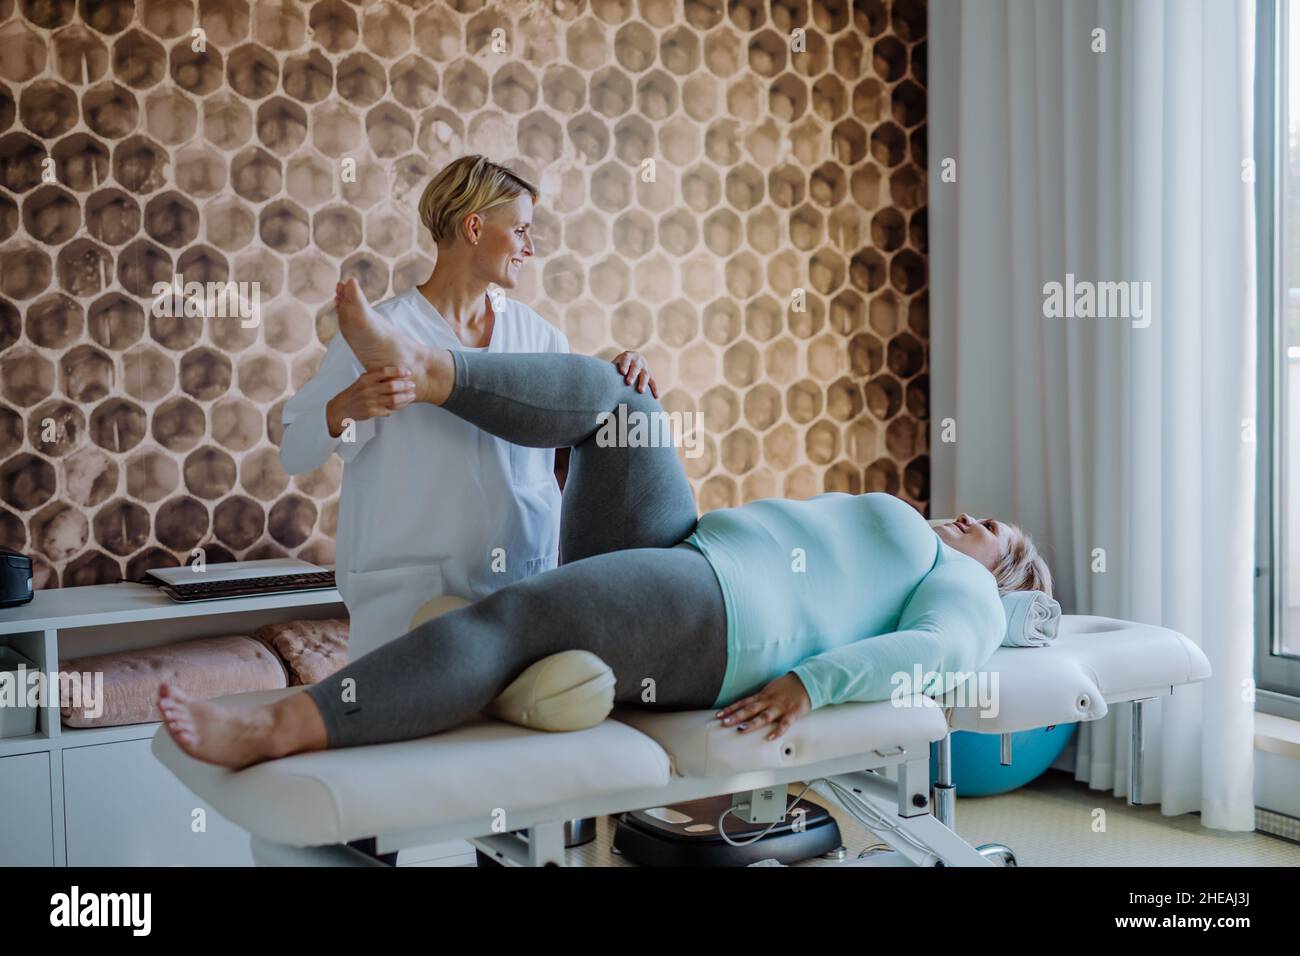 Femme physiothérapeute adulte de taille moyenne s'exerçant avec une femme en surpoids à l'intérieur dans un centre de réadaptation Banque D'Images